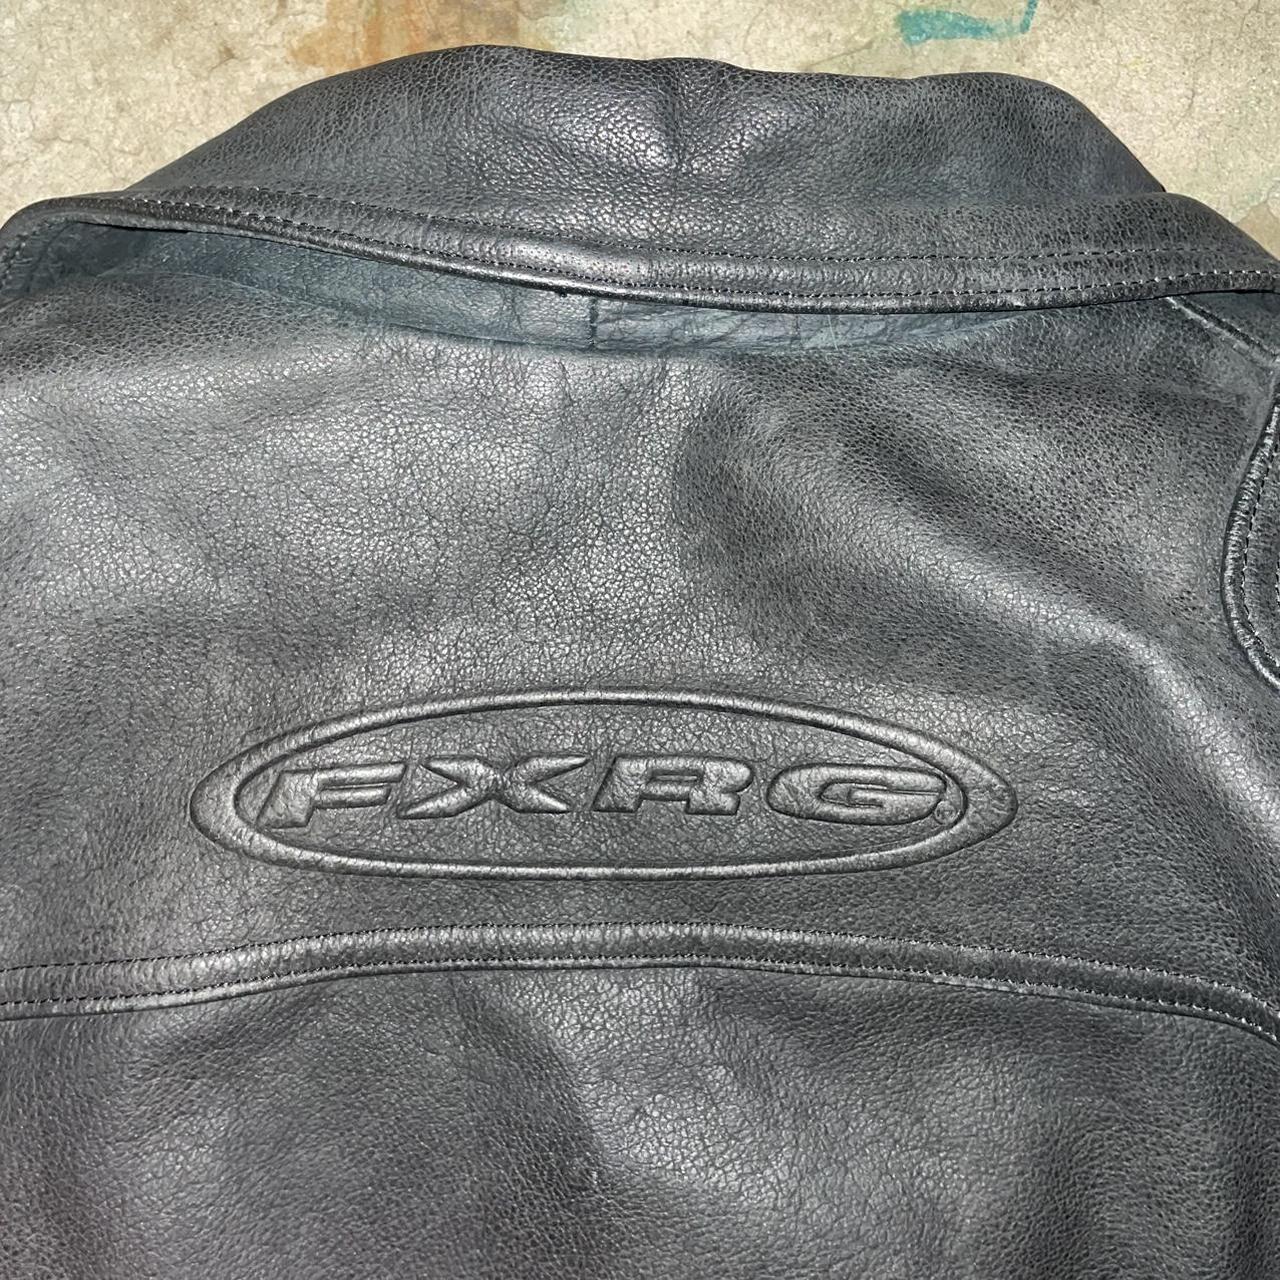 Rare Harley Davidson FXRG Black Leather Jacket - Depop